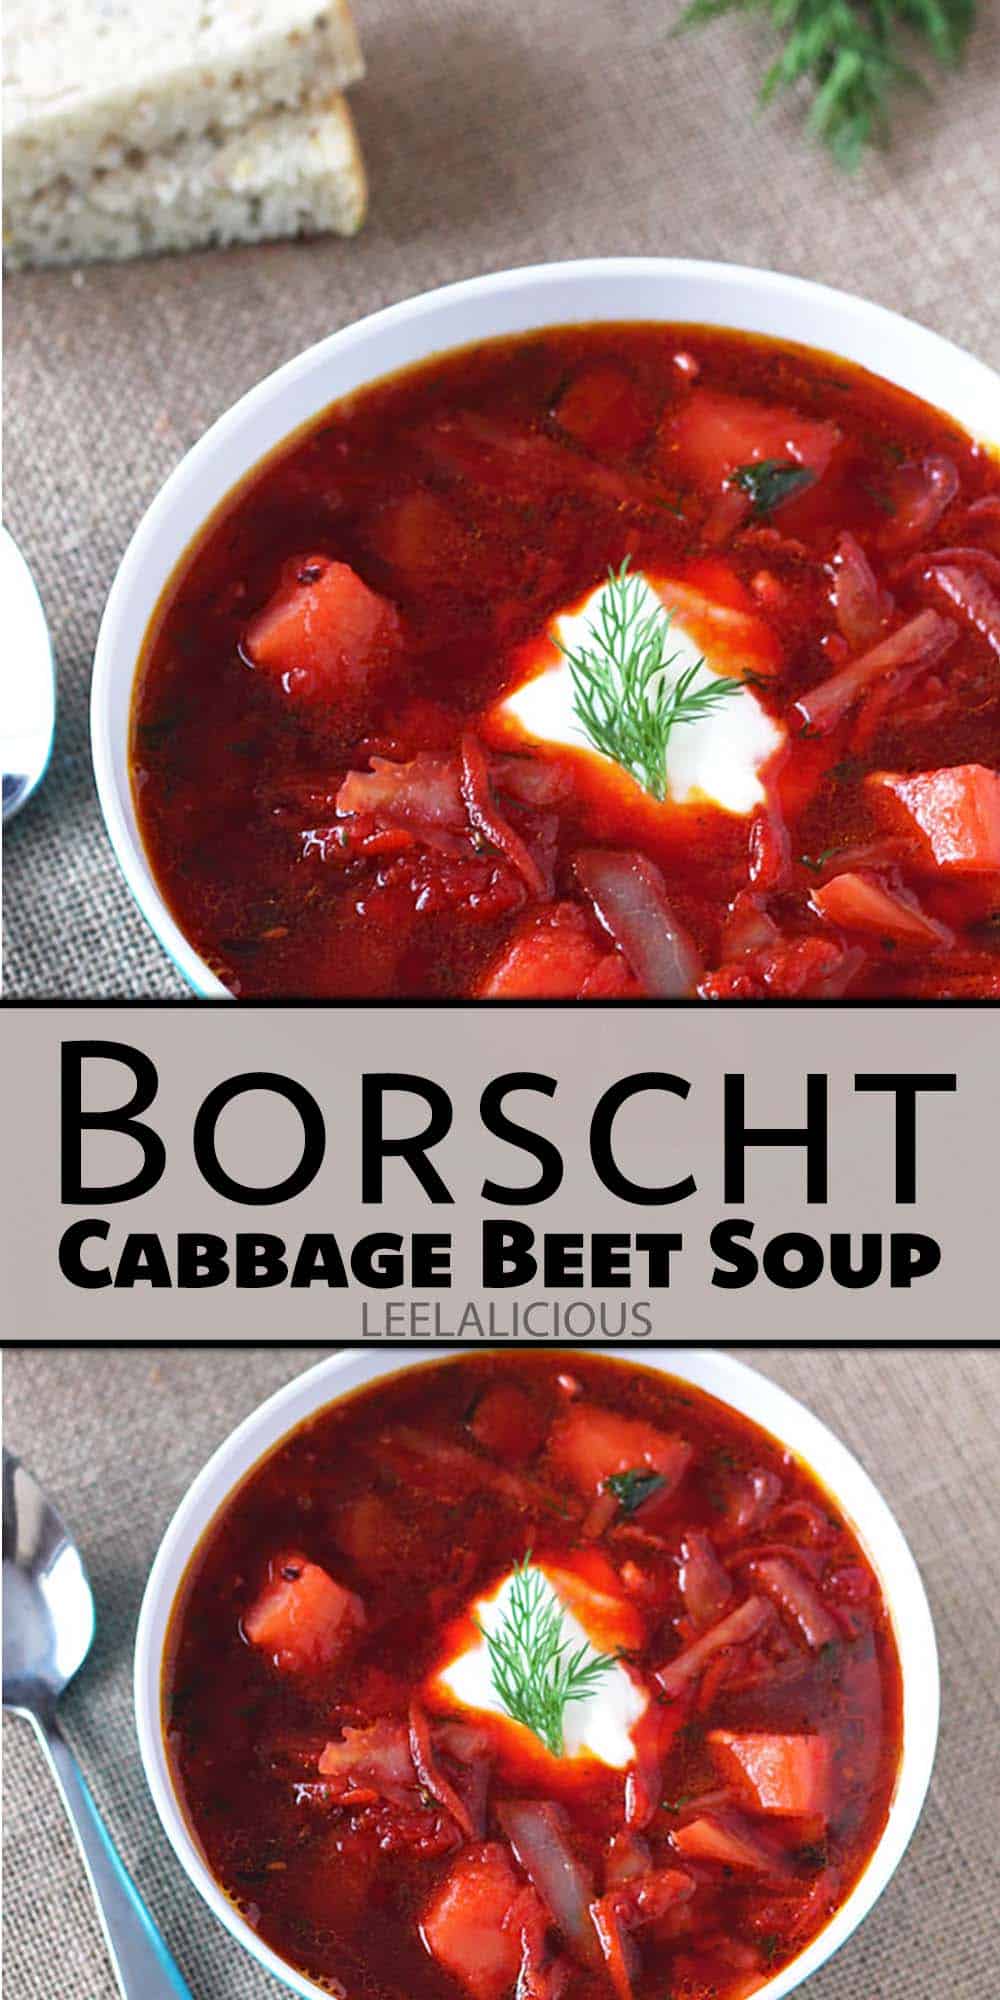 Borscht - Cabbage Beet Soup